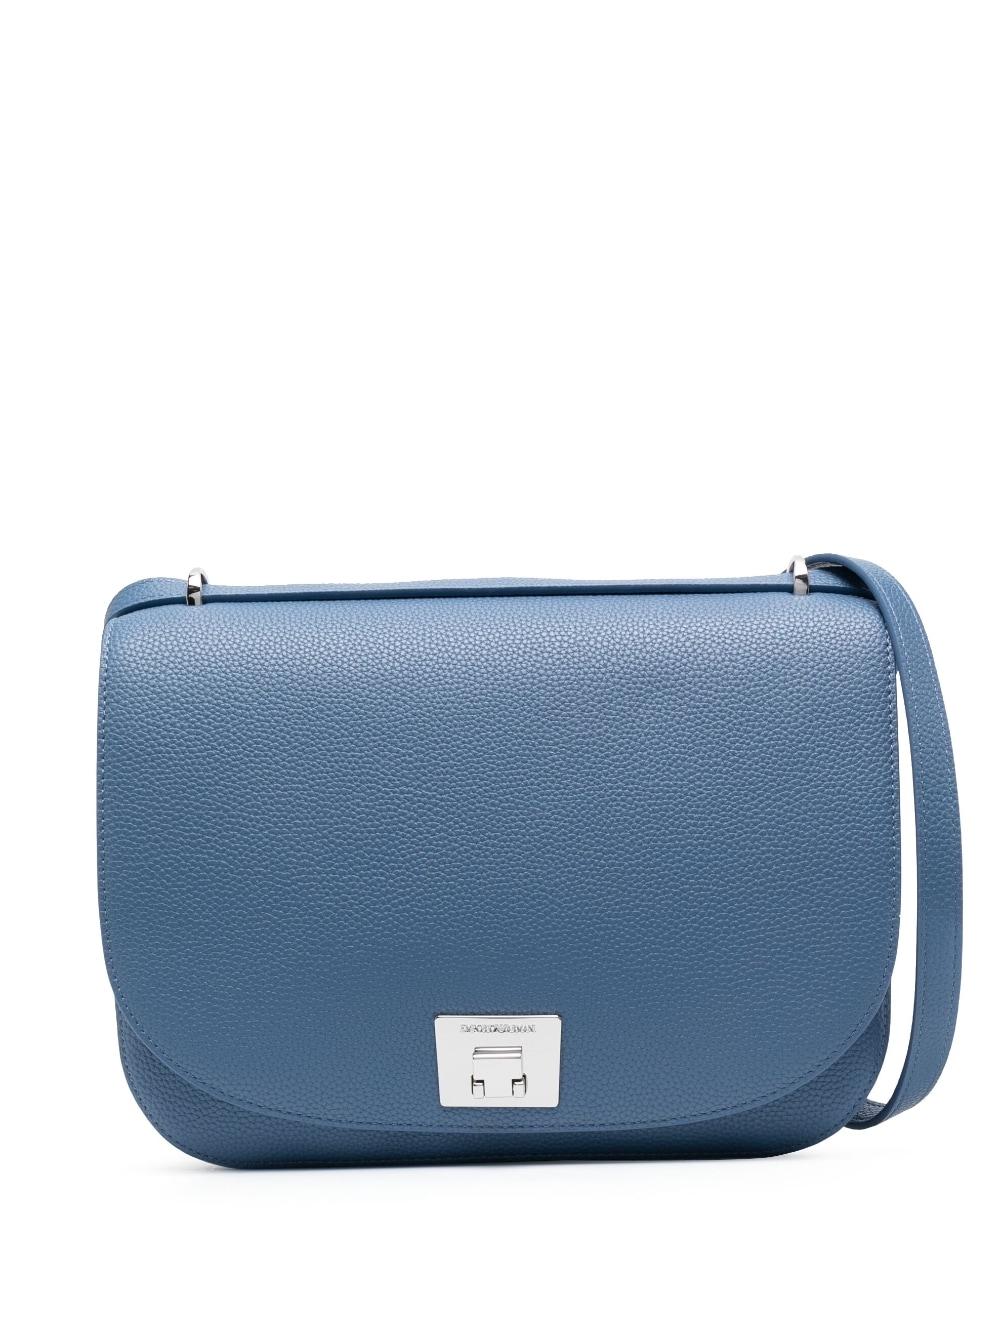 Emporio Armani Crossbody Bag in Blue | Lyst